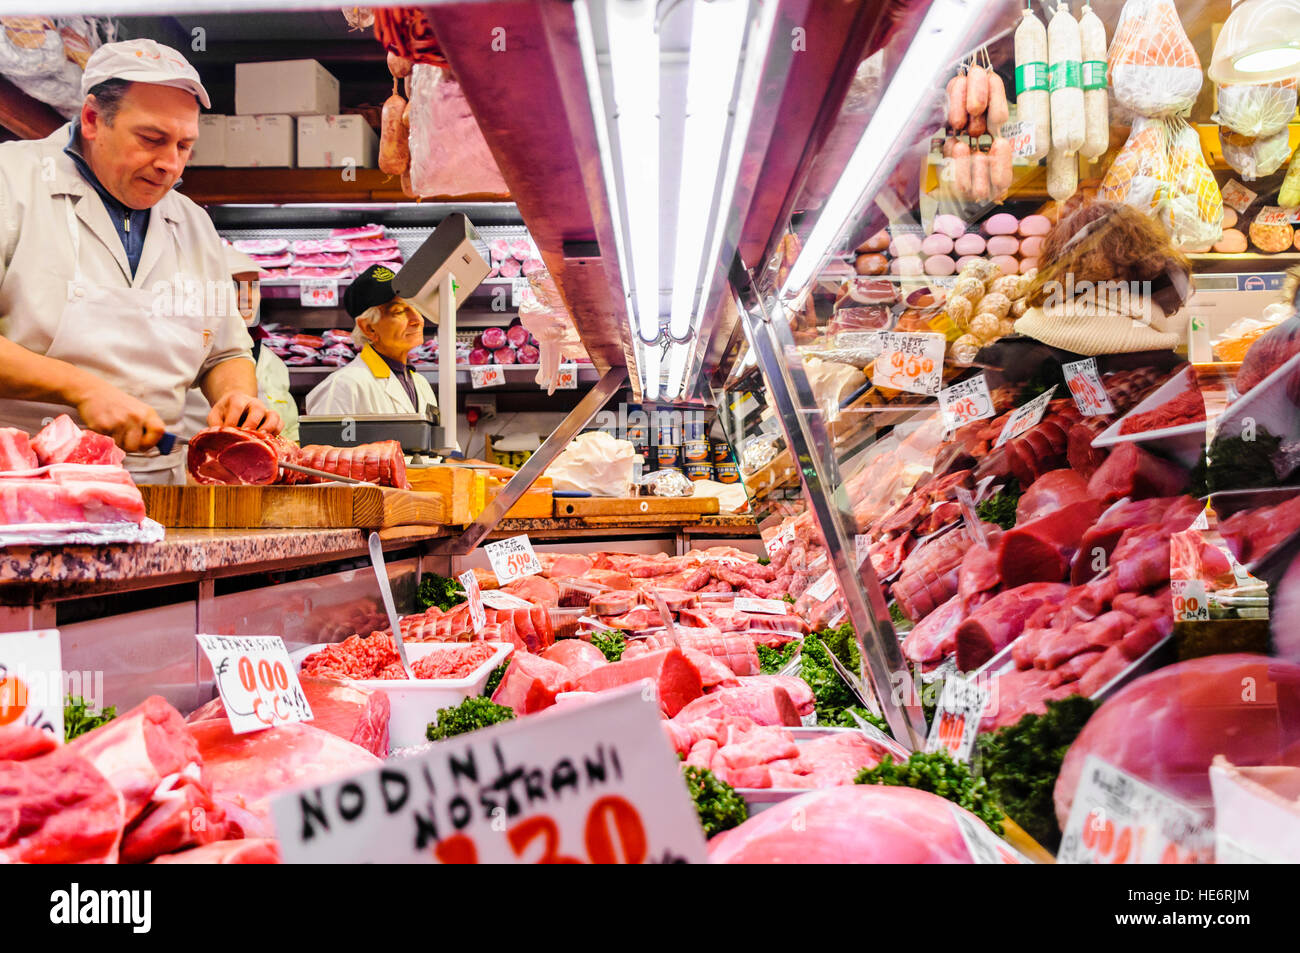 Un boucher italien prépare la viande dans son magasin. Banque D'Images